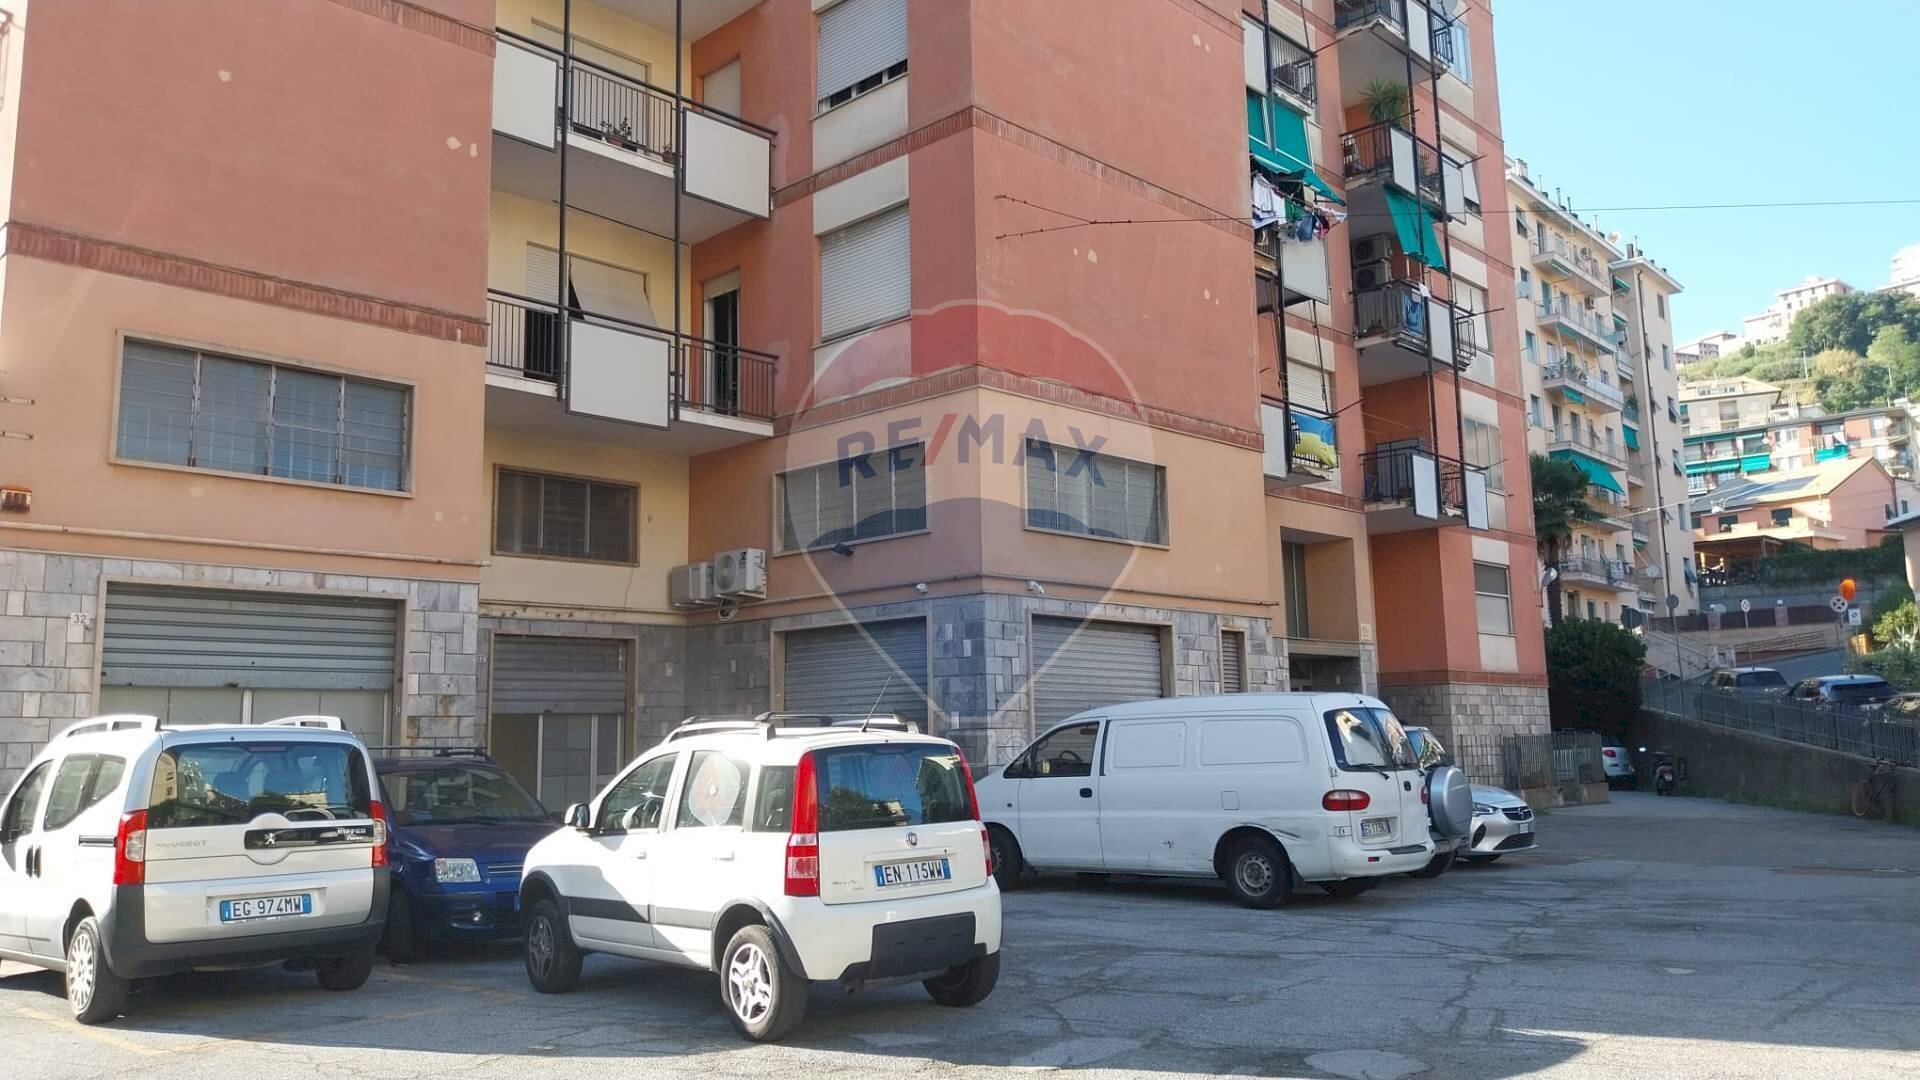 Vendita Magazzino Via Murtola, 8
Palmaro di Pra, Genova